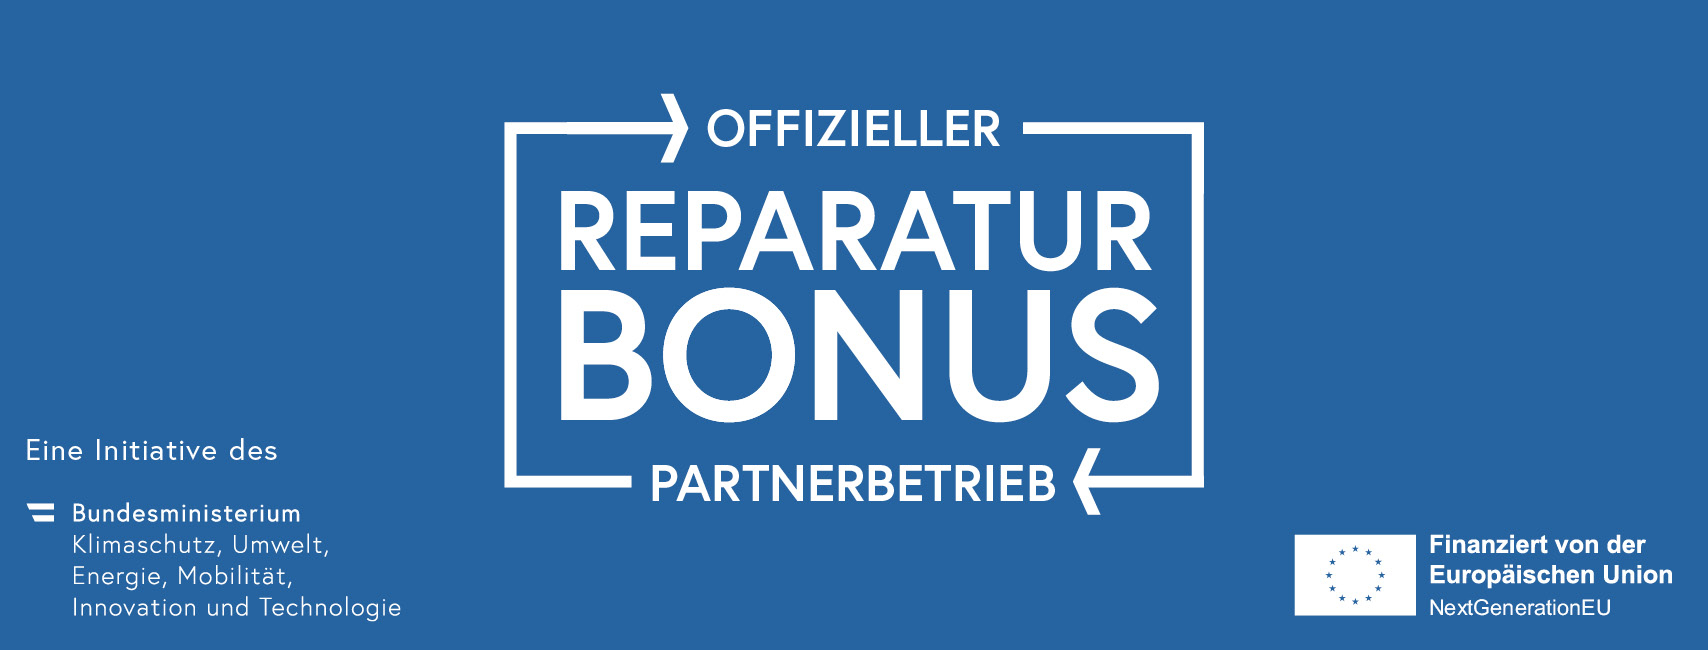 Offizieller Reparaturbonus Partnerbetrieb